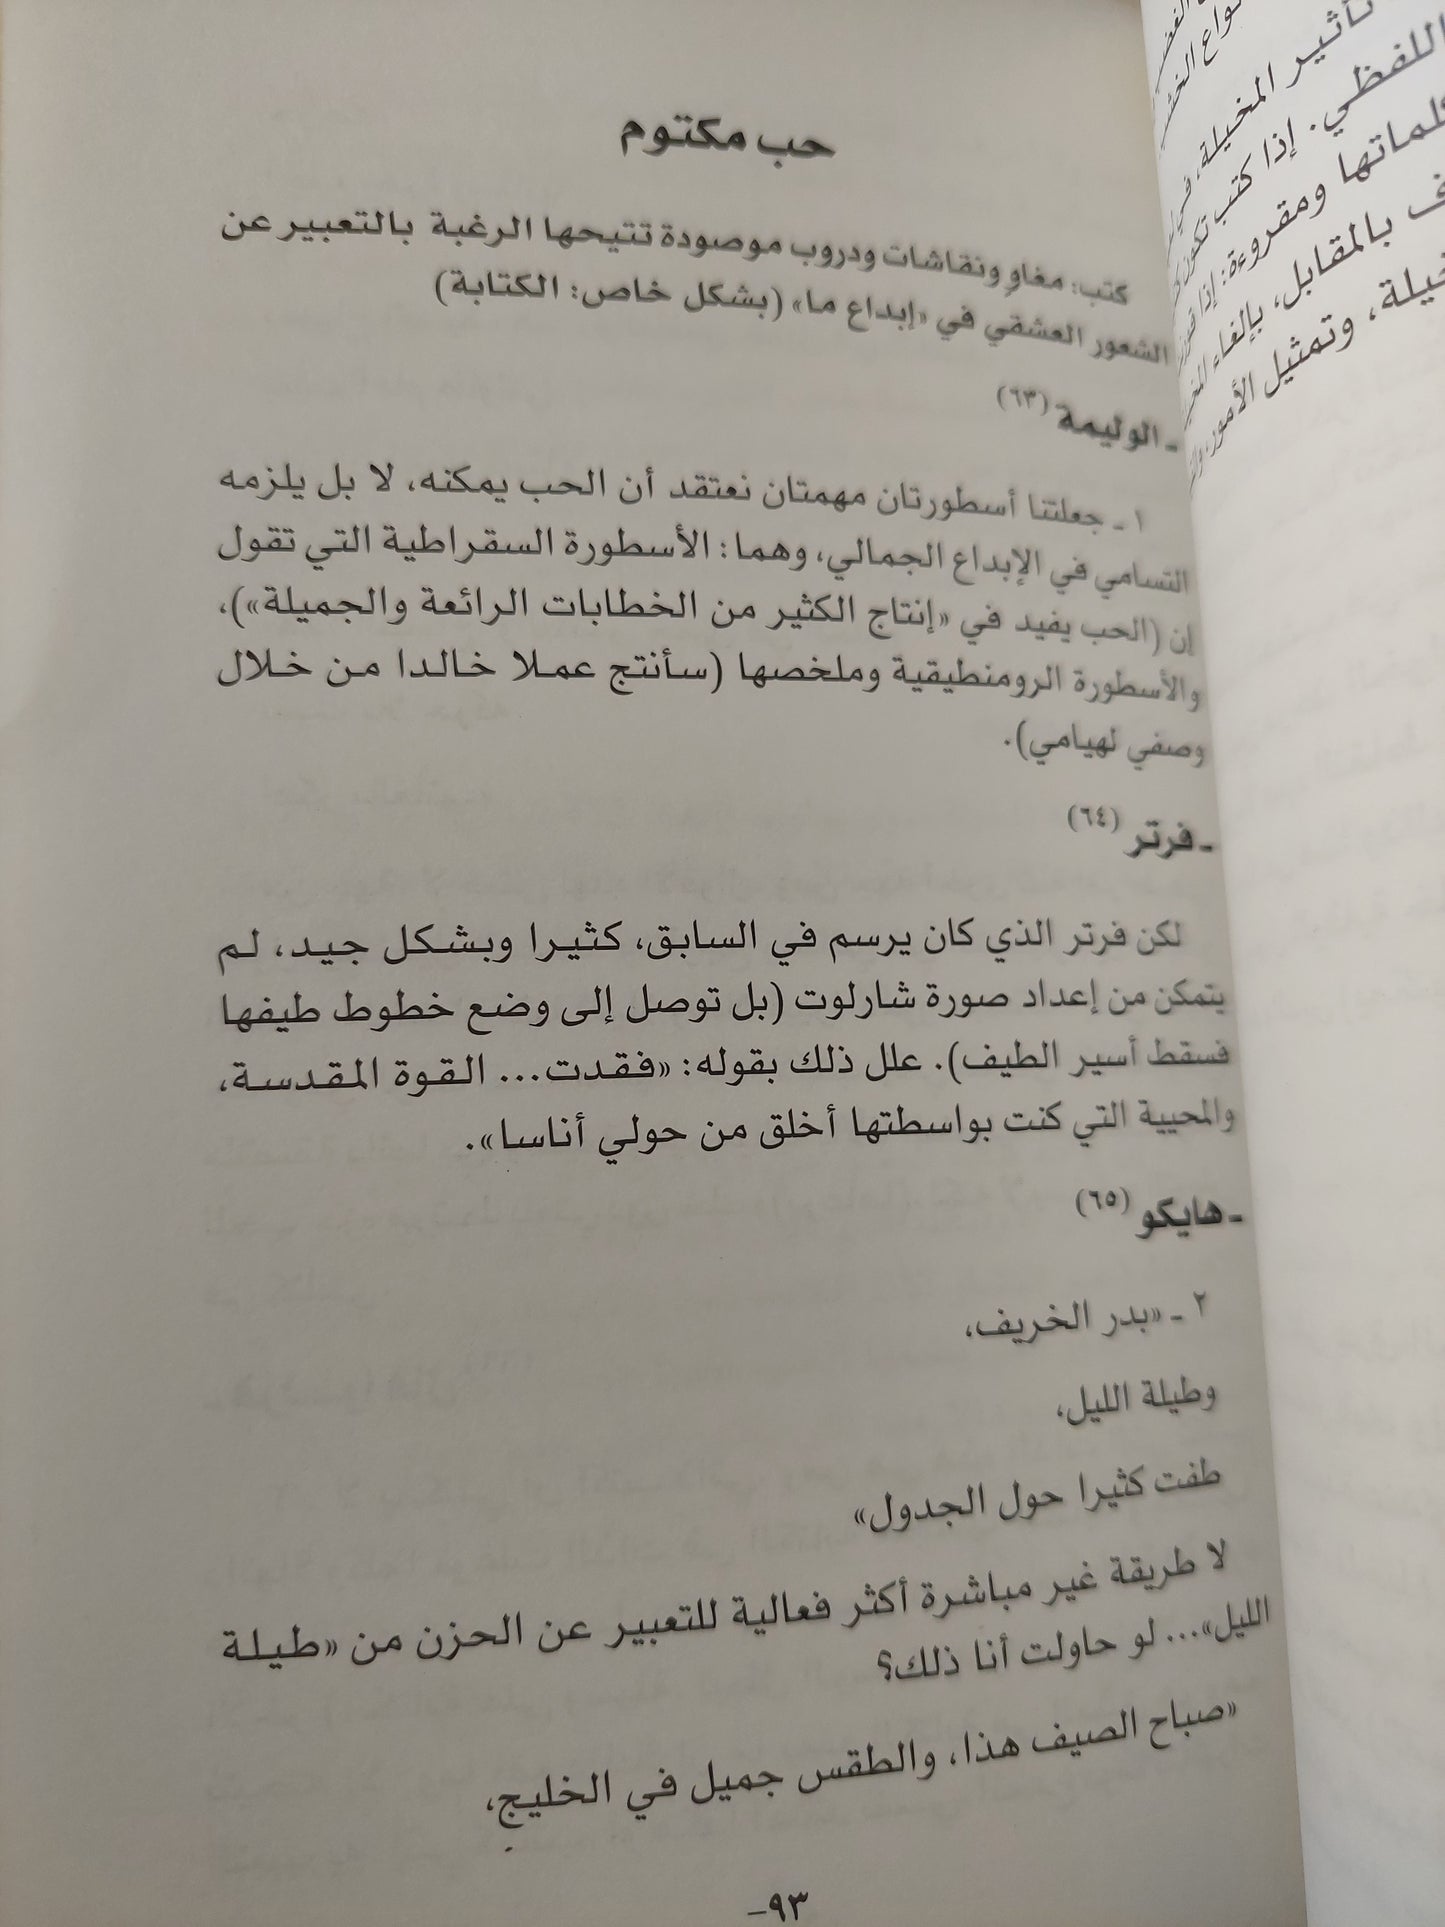 شذرات من خطاب في العشق / رولان بارت